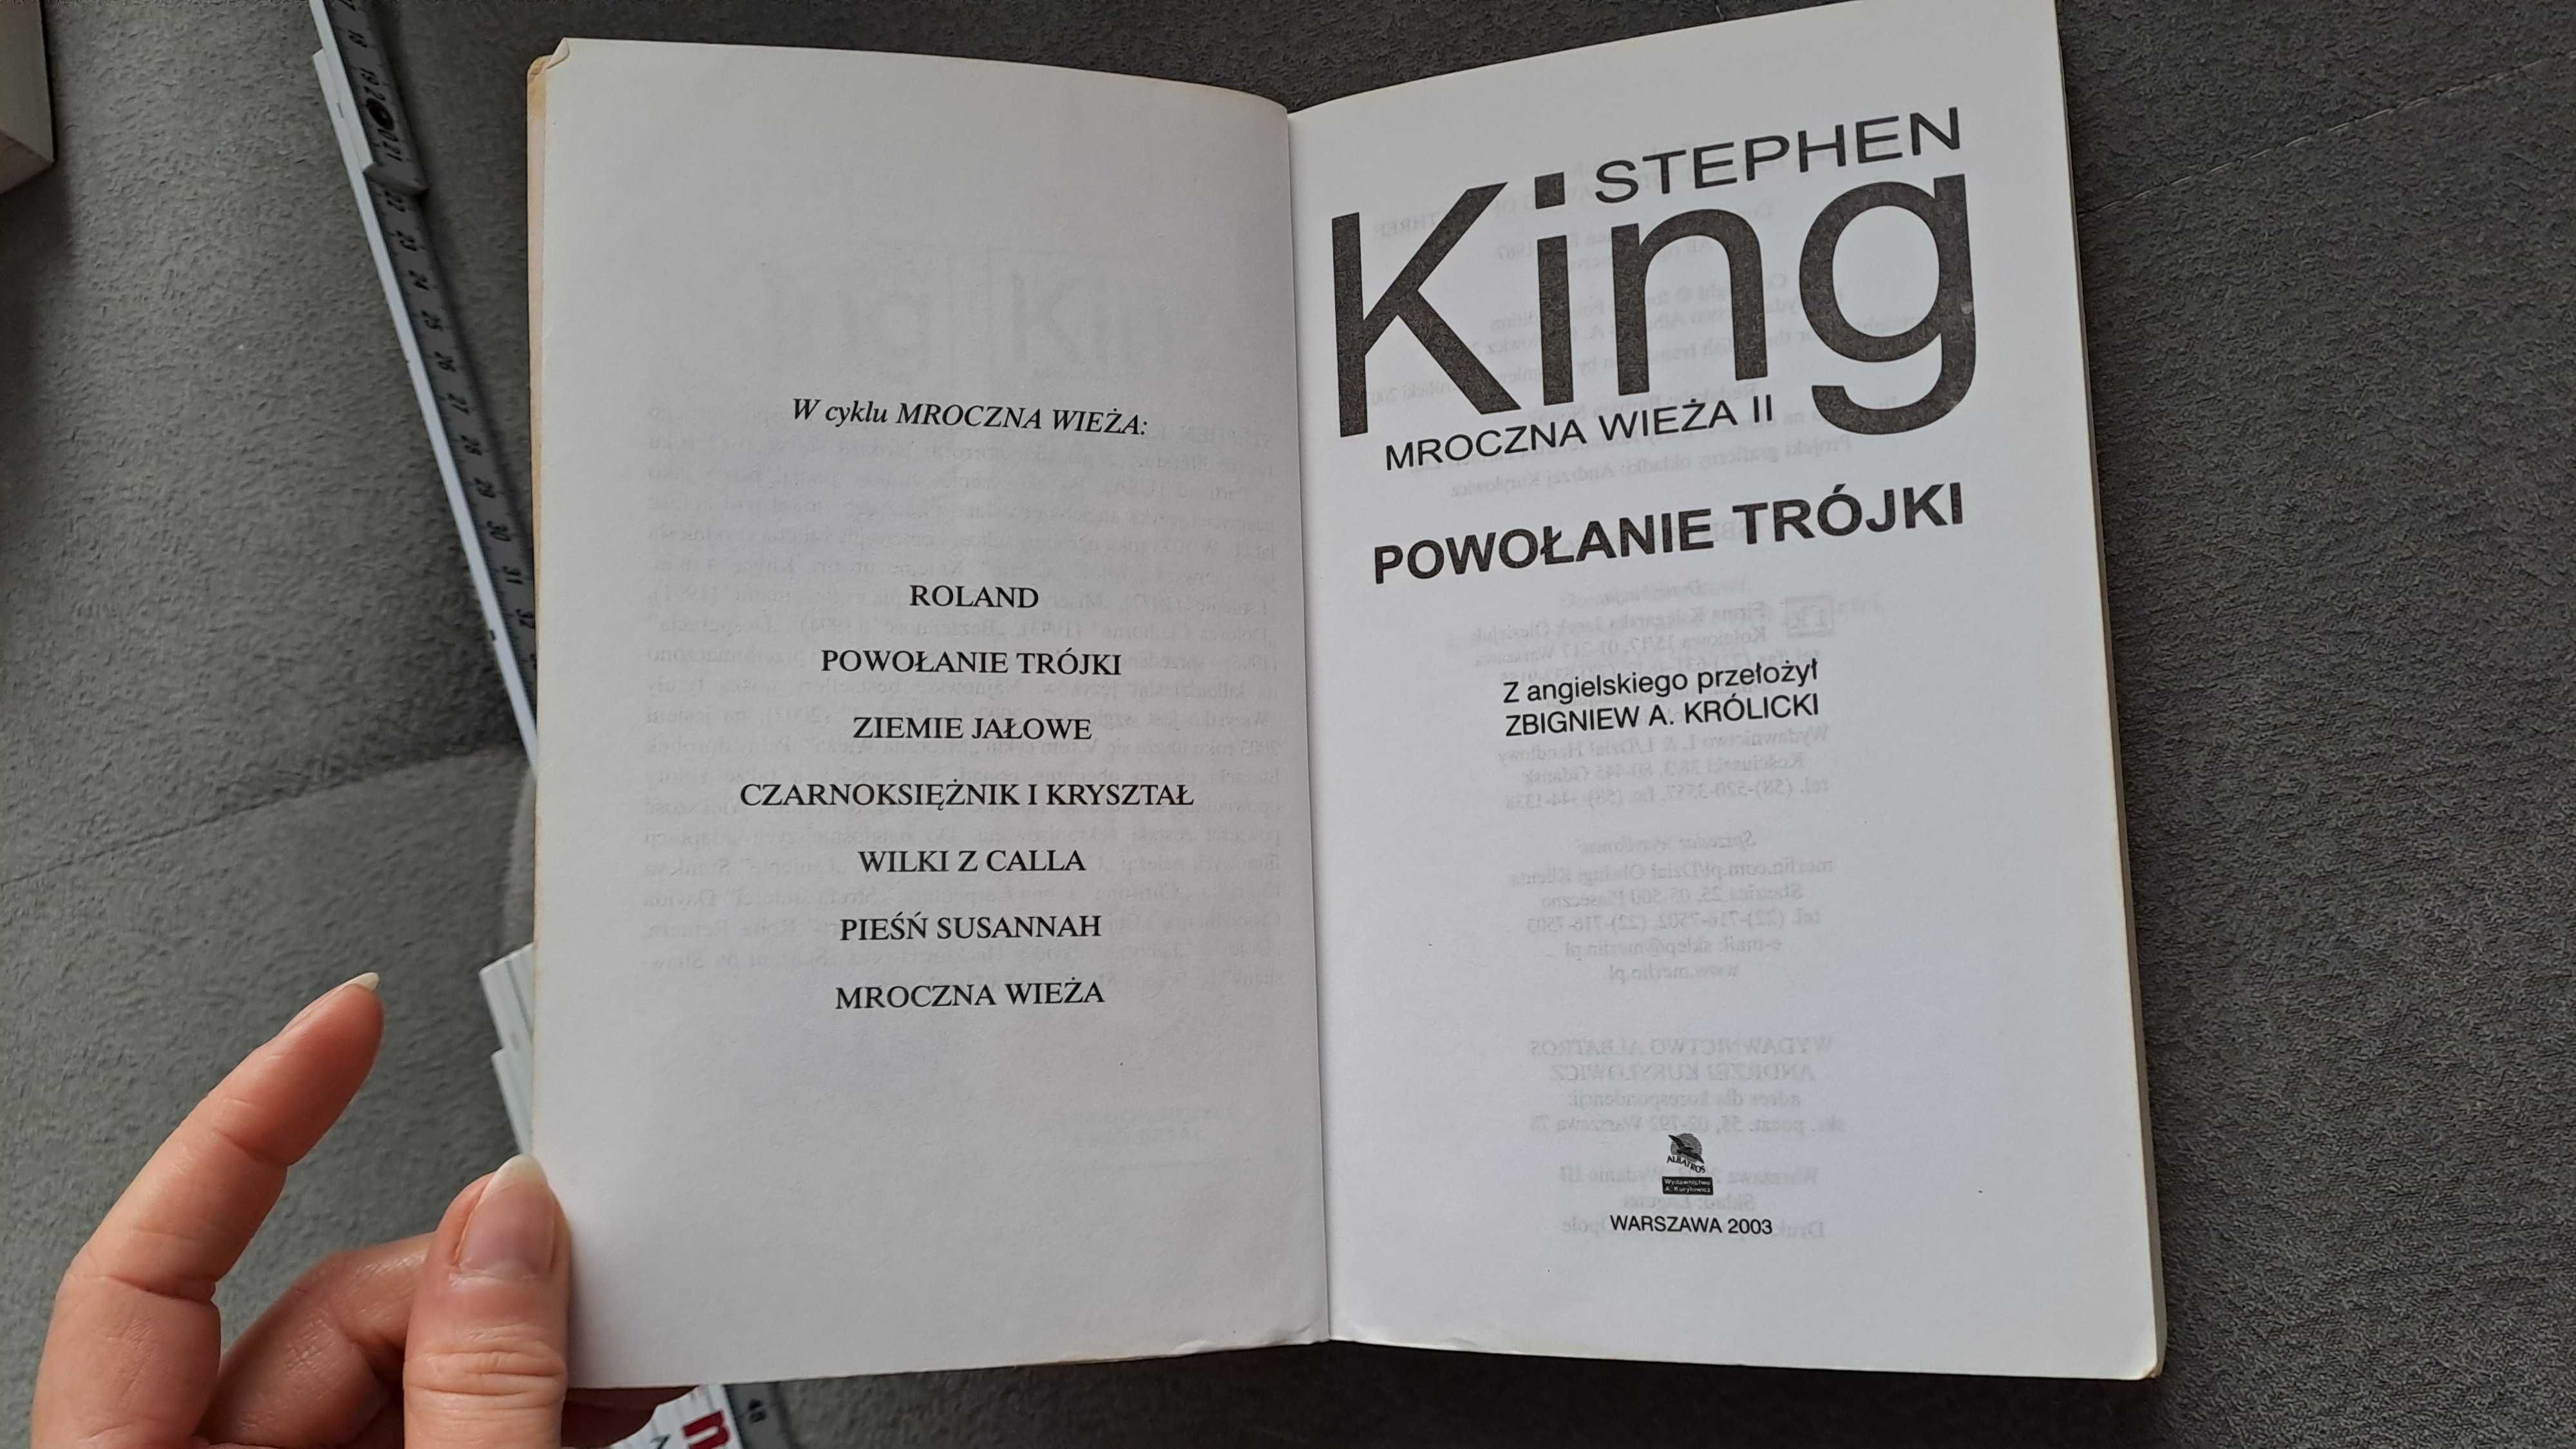 Stephen King Mroczna wieża 2. Powołanie trójki